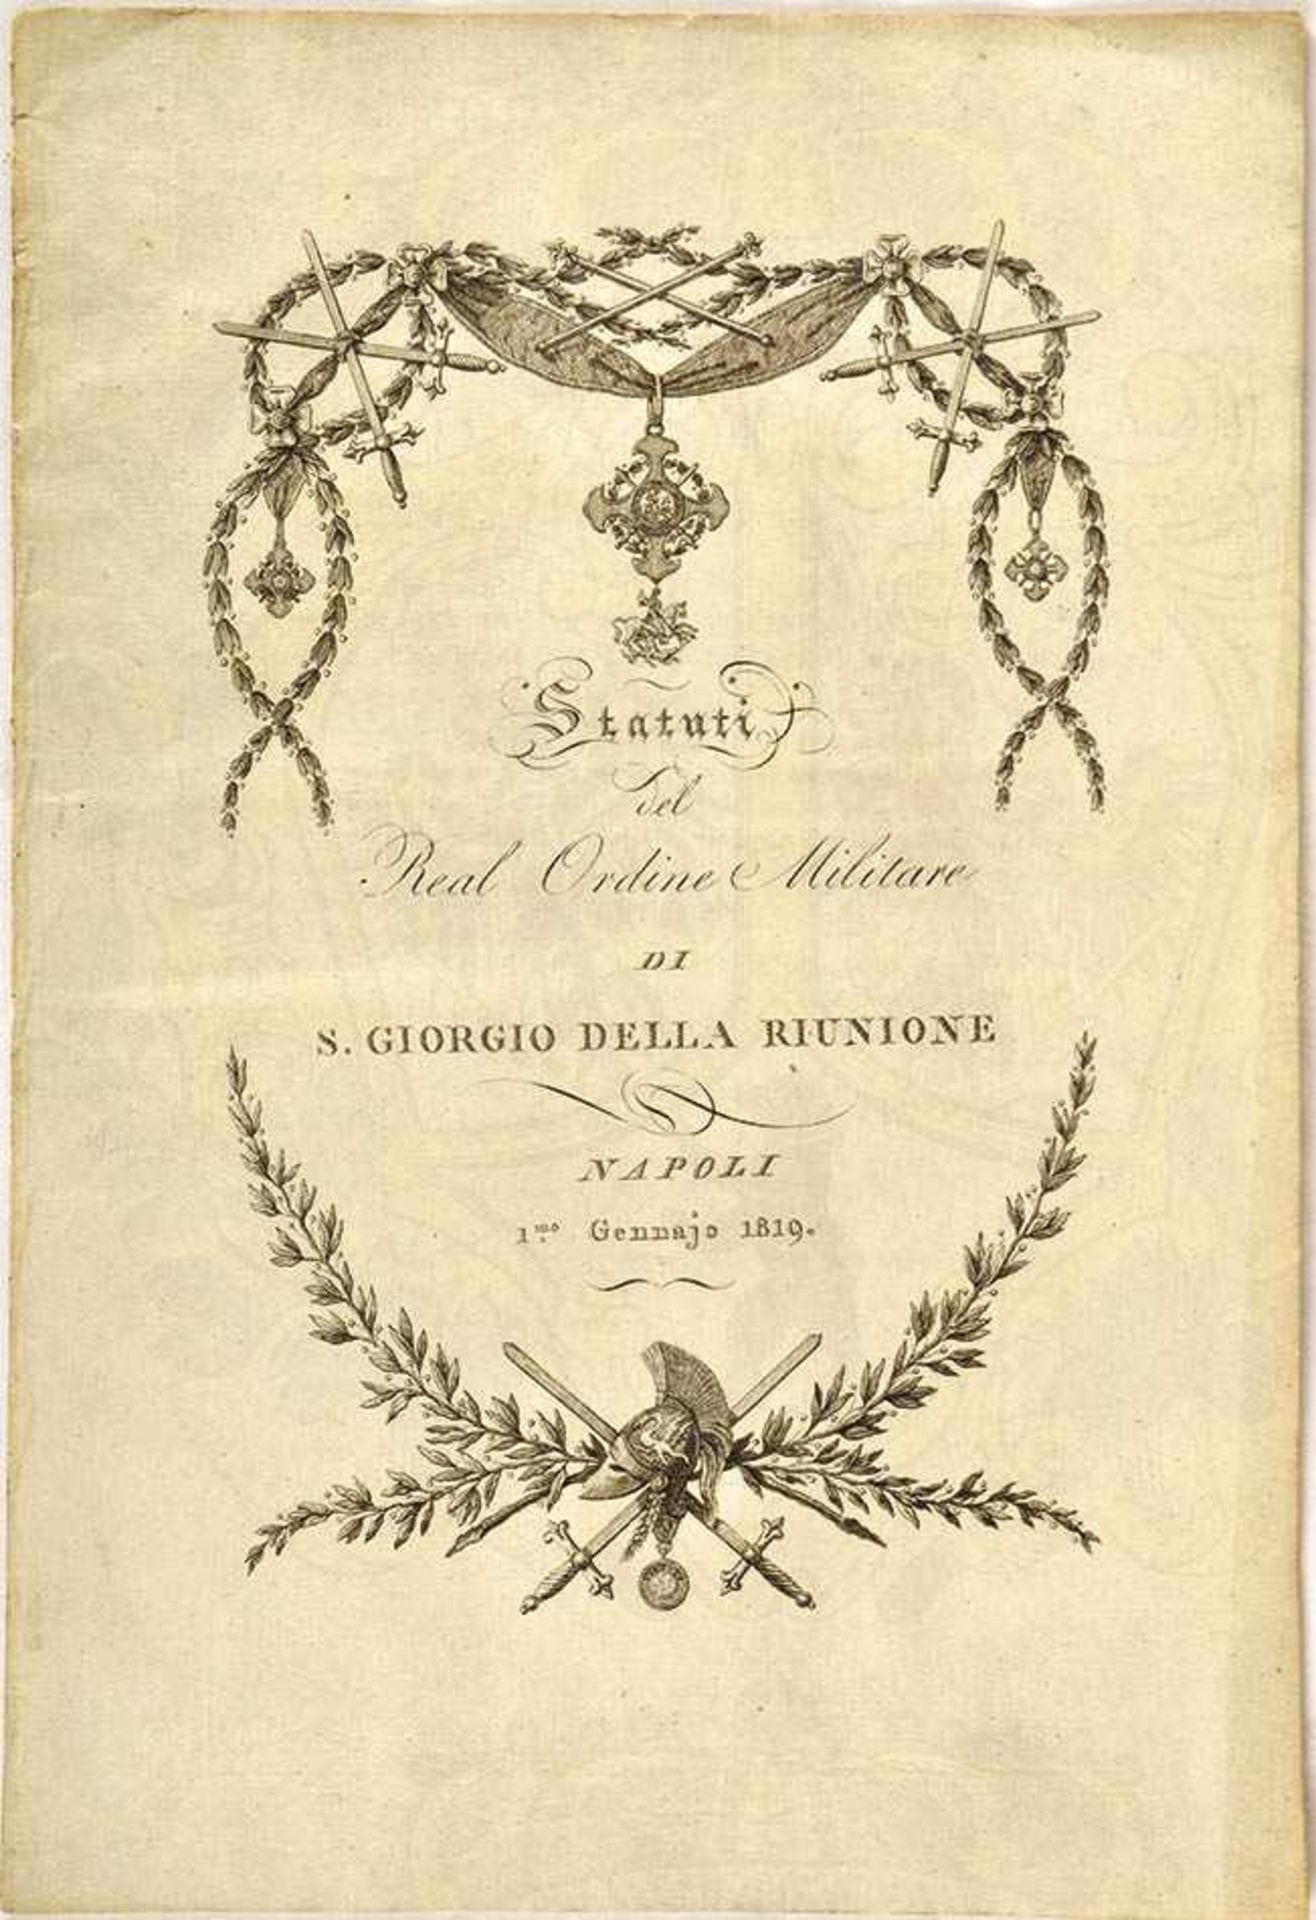 STATUTENHEFT DES MILITÄRVERDIENSTORDEN, St. Georg der Wiedervereinigung“, Neapel 1819, mit 5